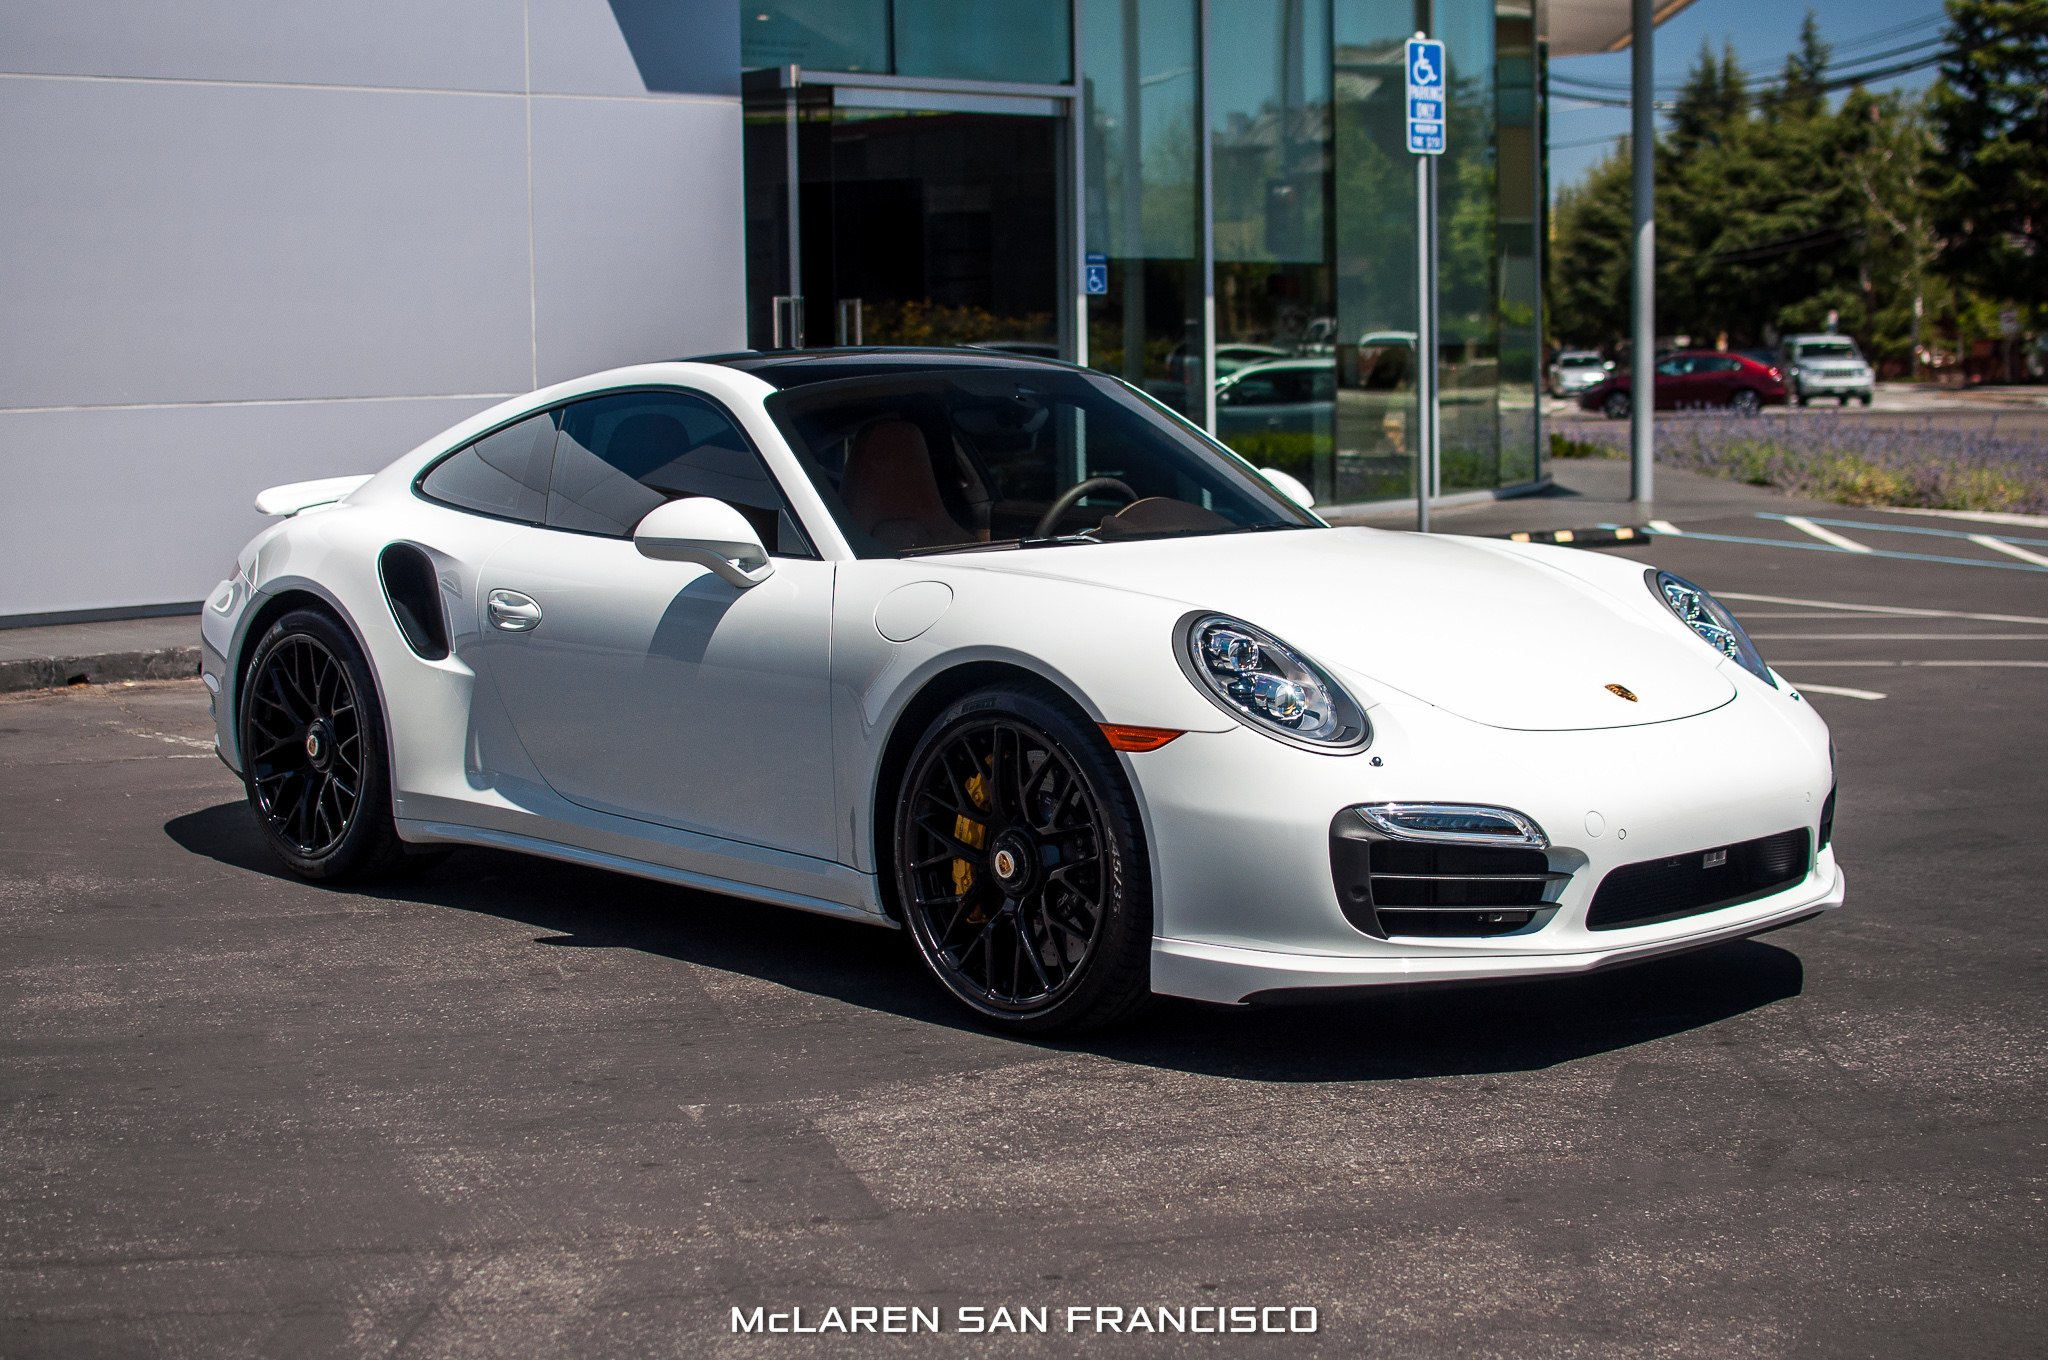 2015, Porsche, 911, Turbo s, Coupe, Cars, White Wallpaper